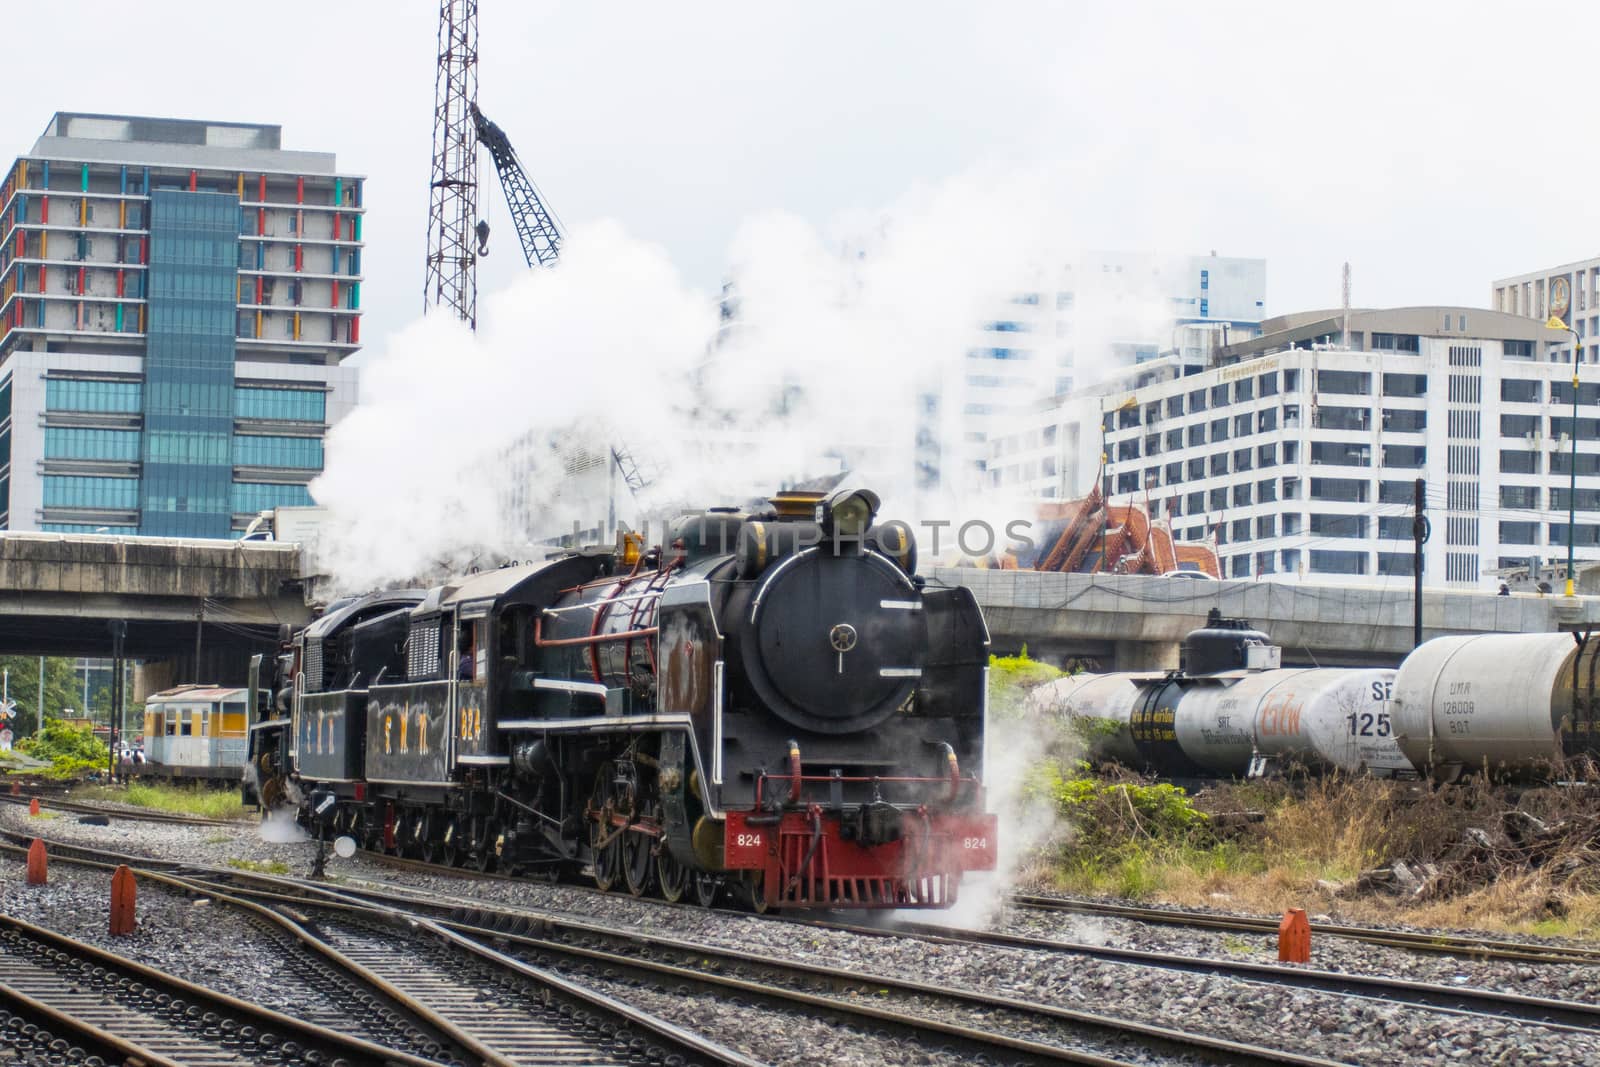 Bangkok Thailand Oct 20, 2020: -The train Steam locomotive
A steam locomotive is running on the tracks Bangkok Thailand